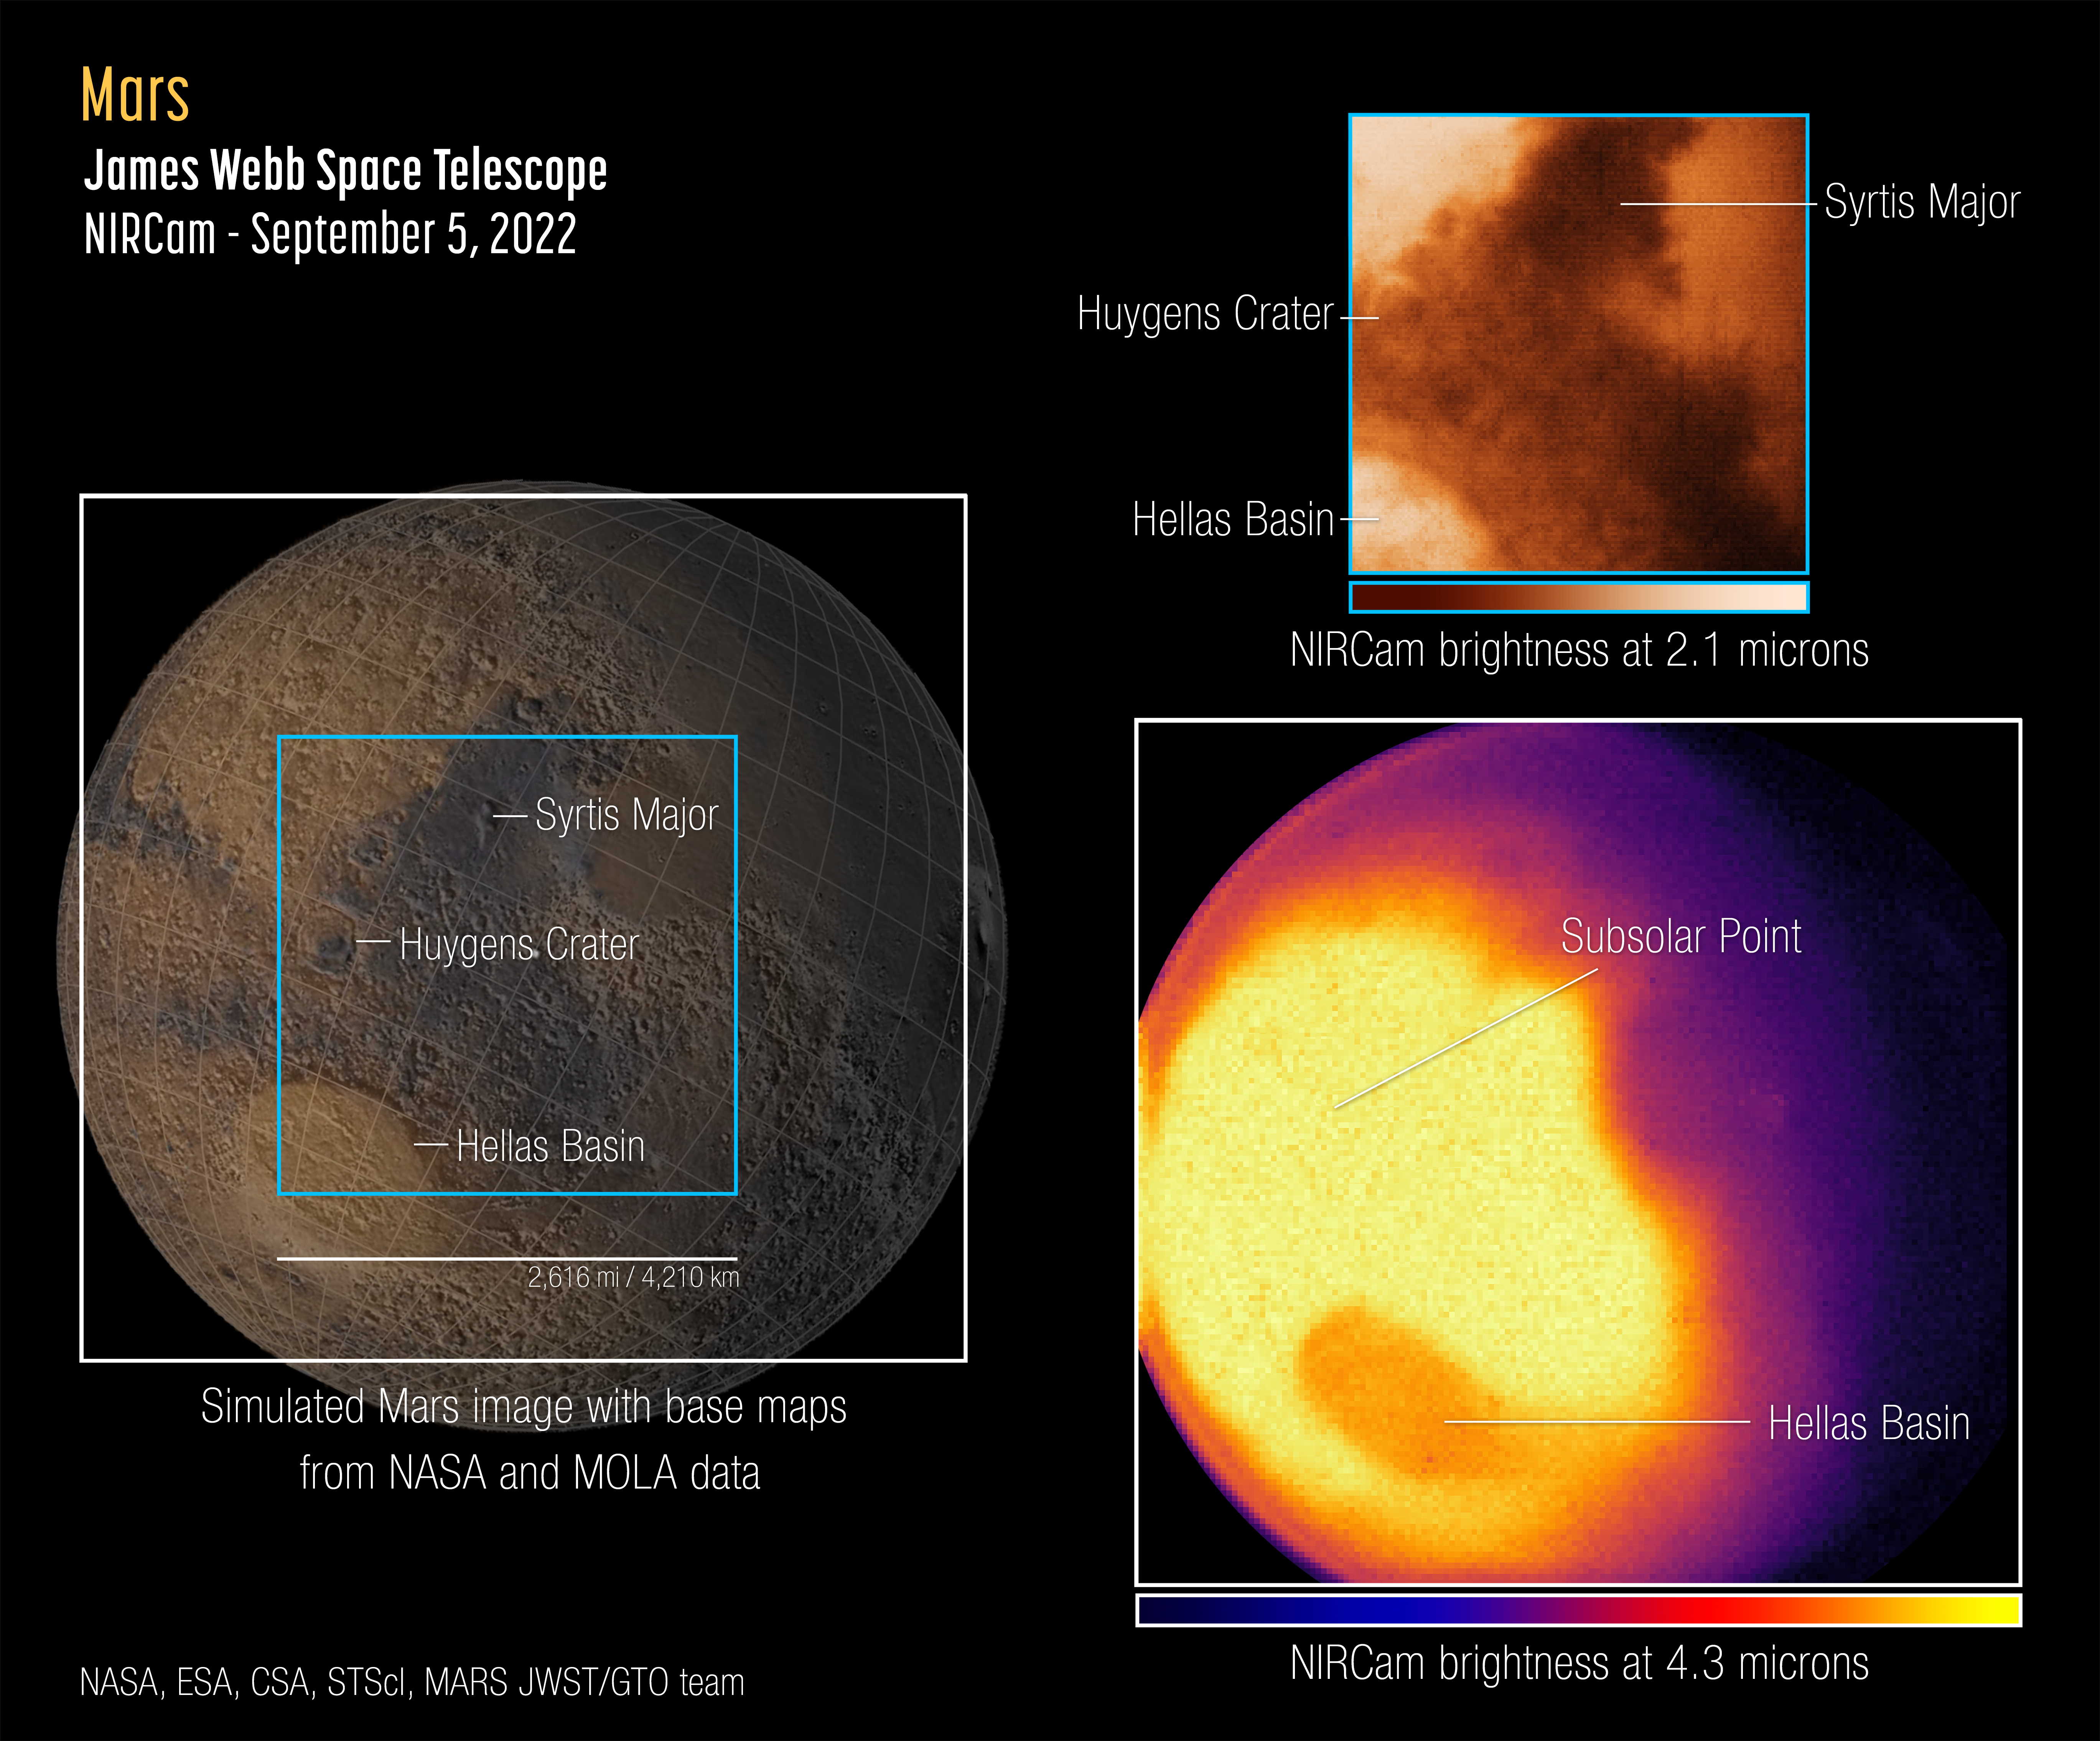 Зліва зображена «еталонна» мапа спостережуваної півкулі Марса, створена за допомогою орбітальної станції MRO. Згори зліва — зображення NIRCam на довжині хвилі у 2,1 мікрона, на якому видно особливості рельєфу. А внизу справа показана світлина, отримана на довжині хвилі у у 4,3 мікрона. NASA, ESA, CSA, STScI, Mars JWST / GTO team